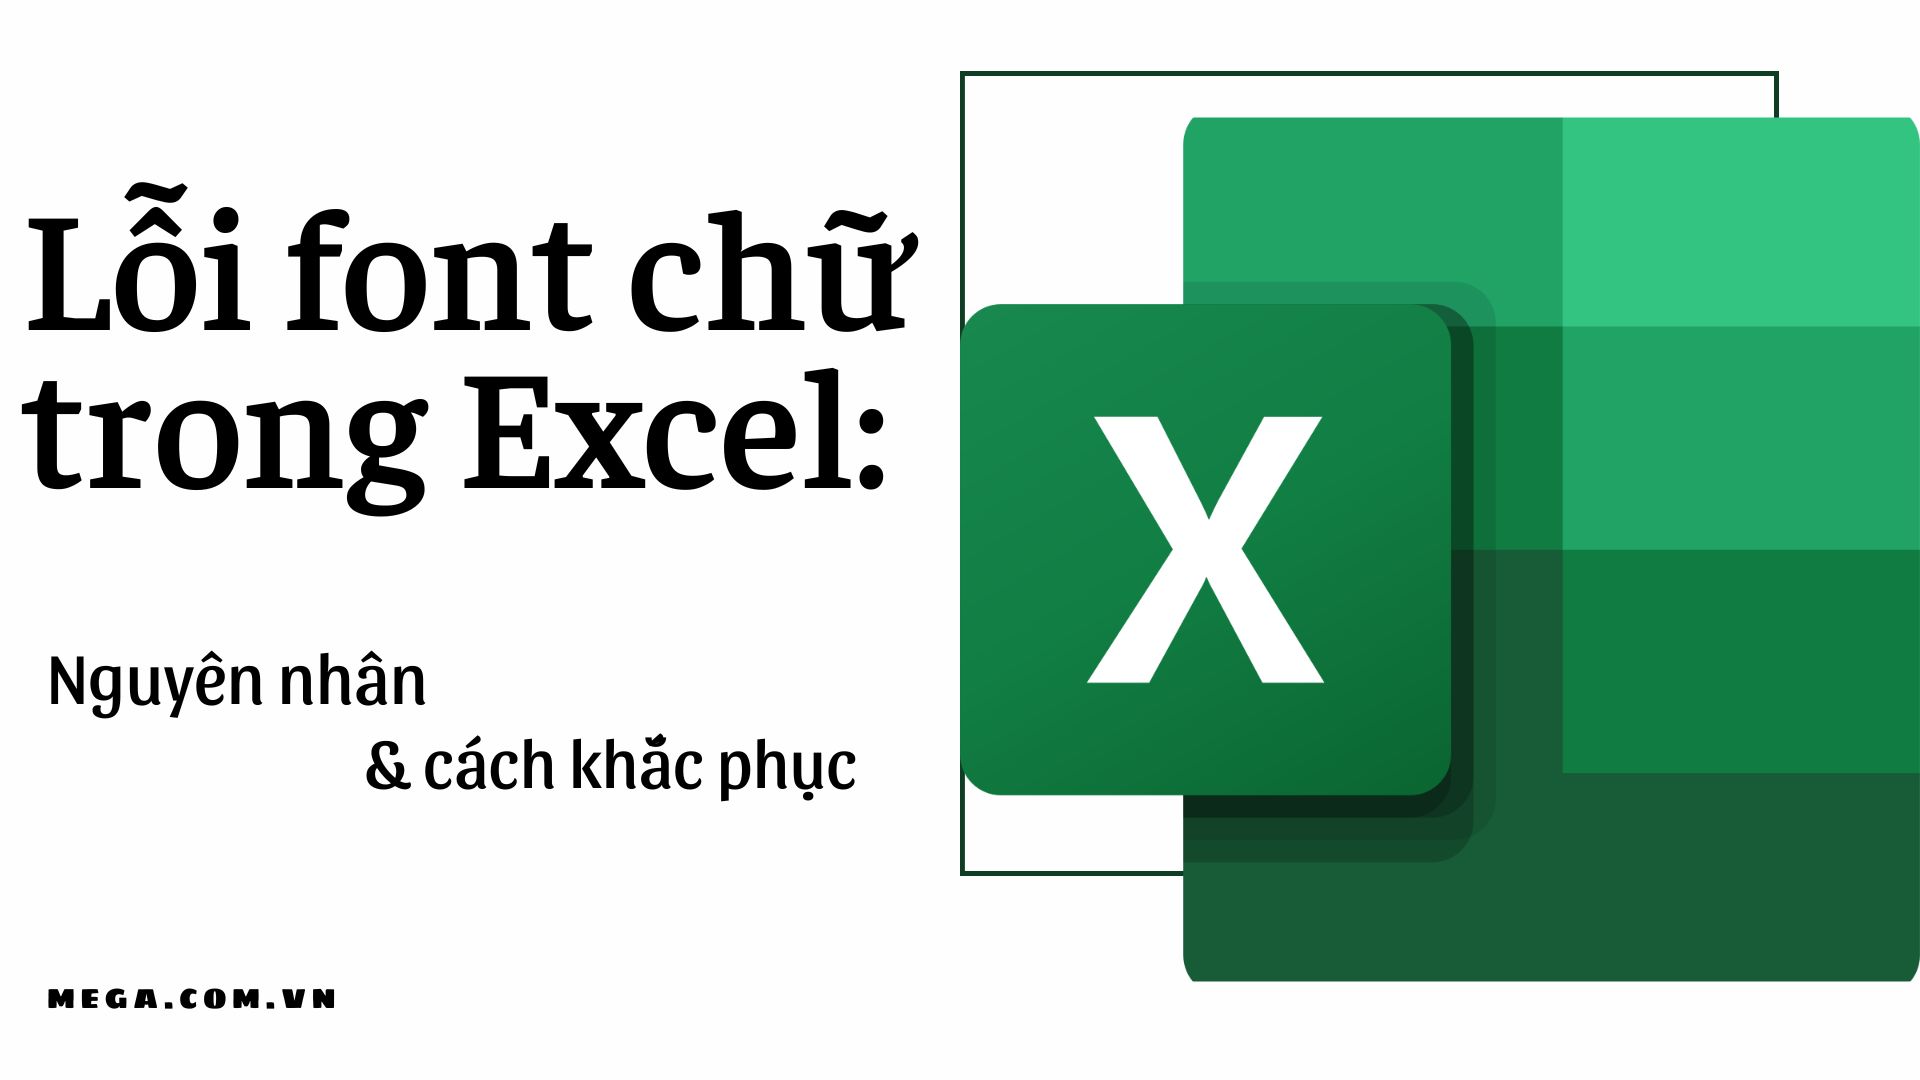 Lỗi font chữ trong Excel có thể dễ dàng xảy ra khi bạn đang làm việc trên dữ liệu, đặc biệt là khi dữ liệu được chuyển từ các hệ thống khác. Đừng lo lắng, hãy click vào hình ảnh liên quan đến từ khóa này để tìm hiểu cách khắc phục ngay bây giờ. Với sự hỗ trợ của chúng tôi, bạn sẽ có thể làm việc trên Excel một cách hiệu quả hơn.